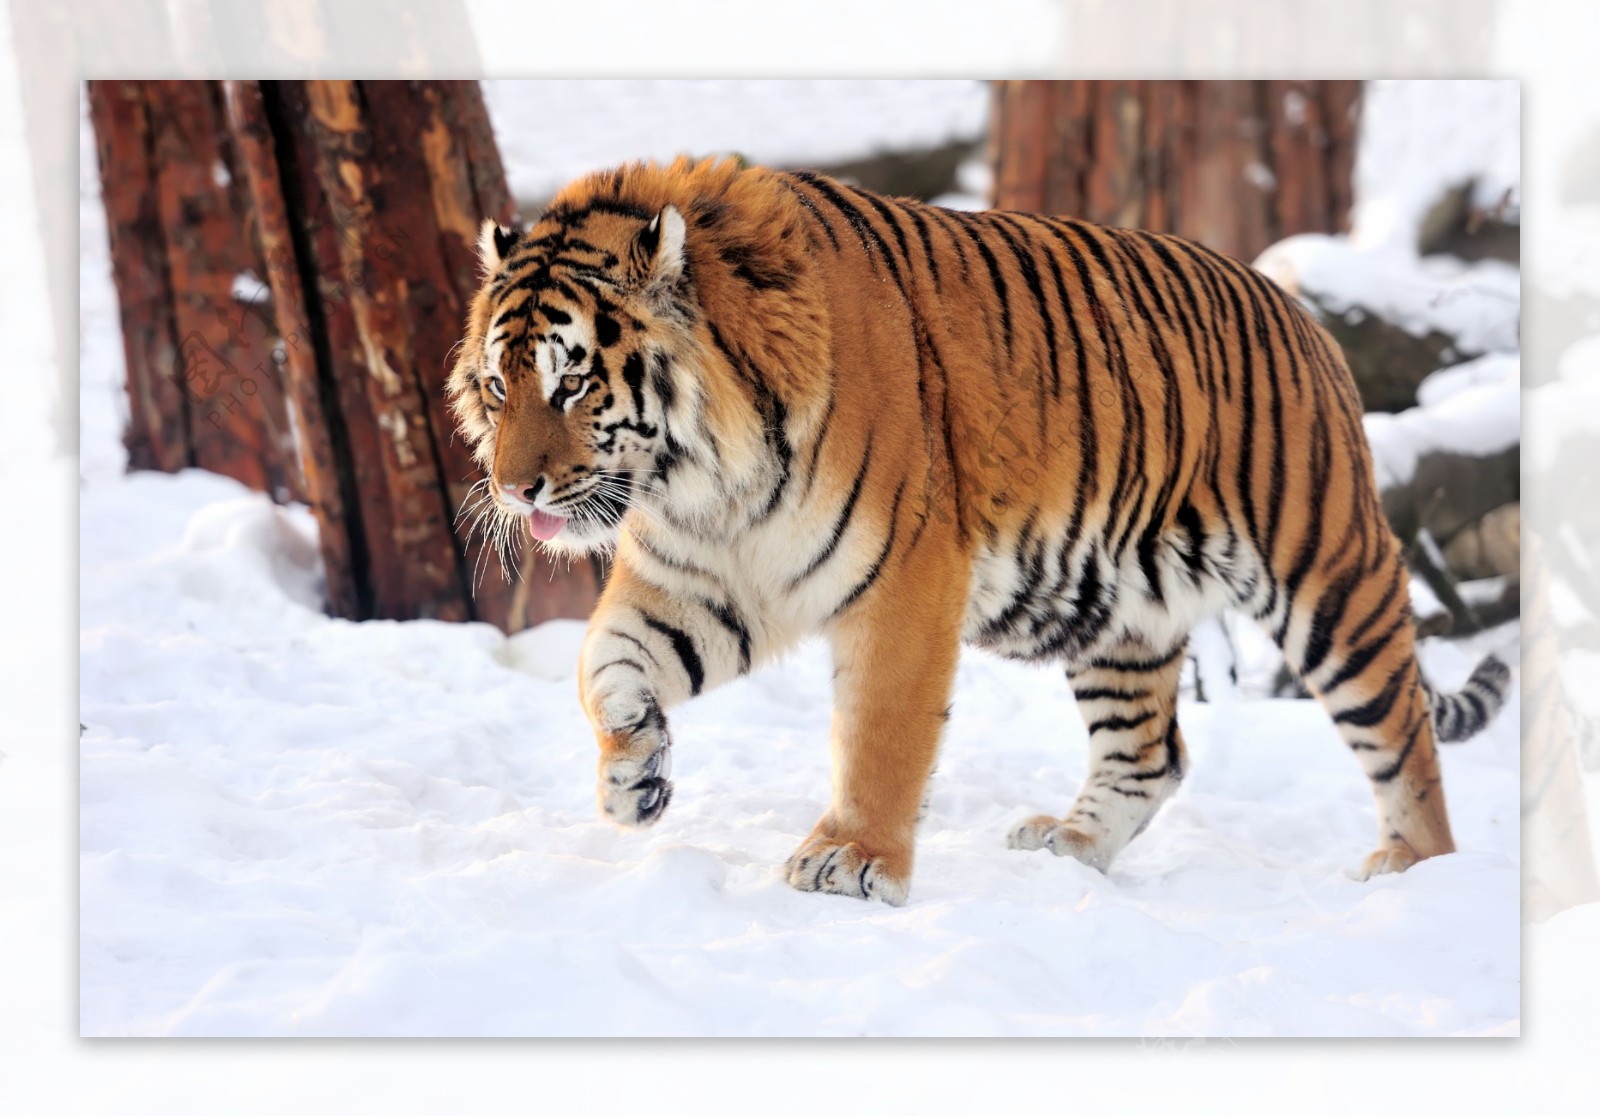 雪地里行走的老虎图片